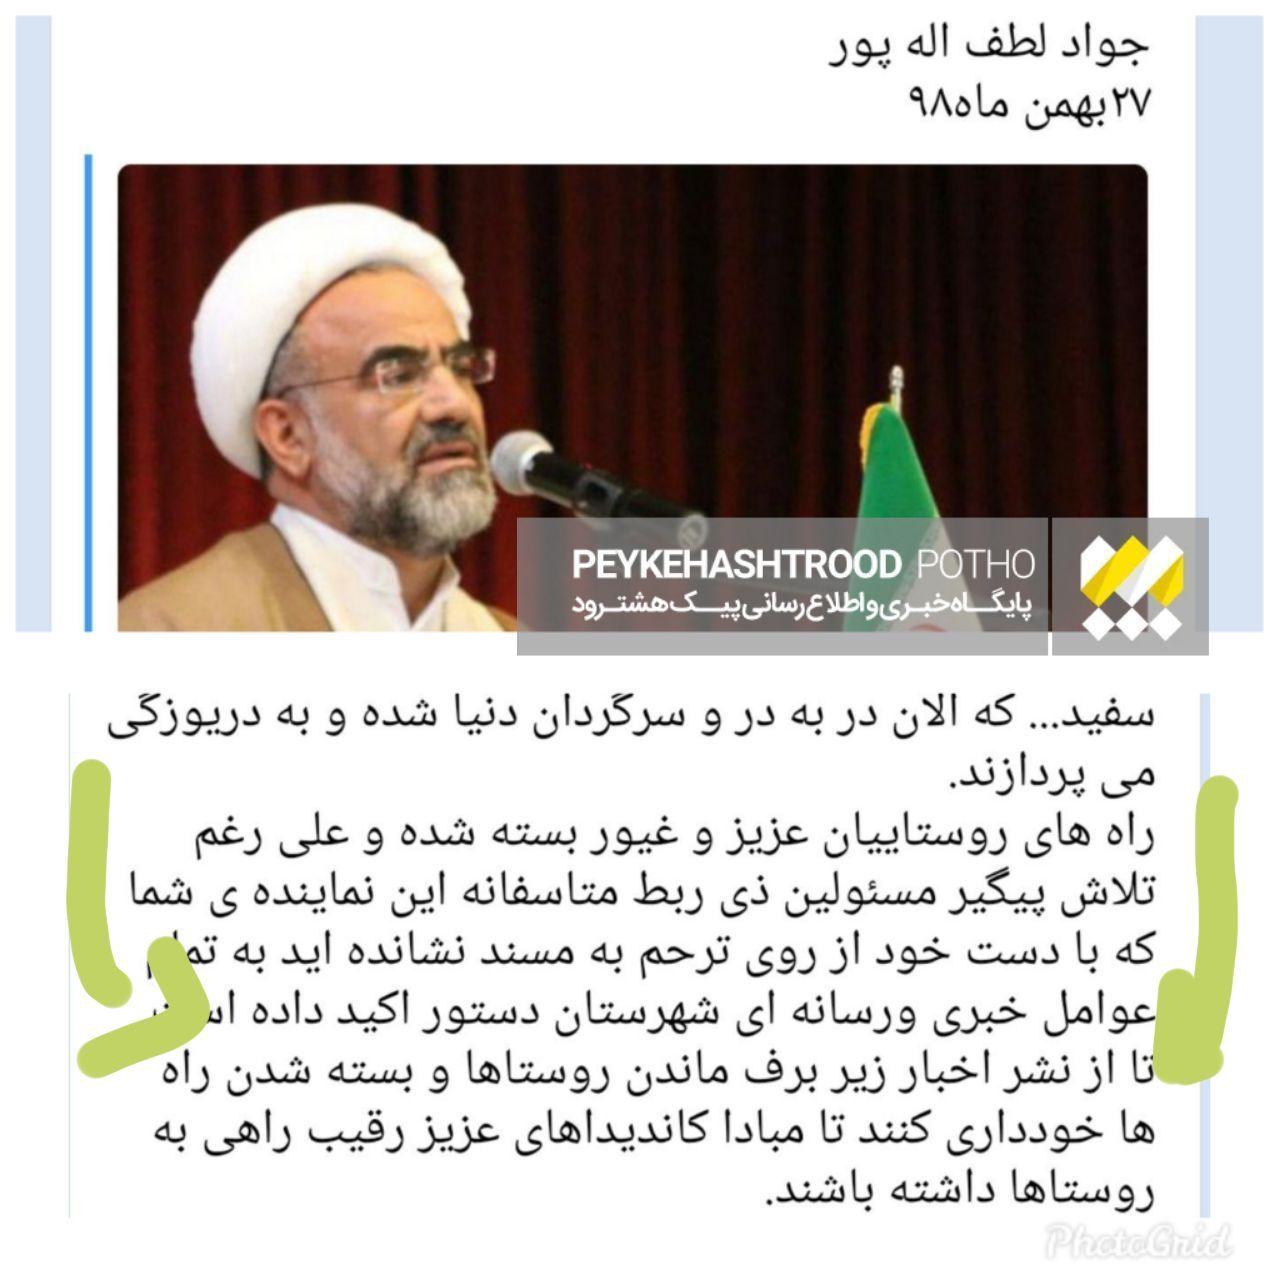 توهین روحانی همیشه ردصلاحیت شده به رسانه های شهرستان هشترود/ رسانه های منطقه بله قربان گوی هیچ کس نیستند